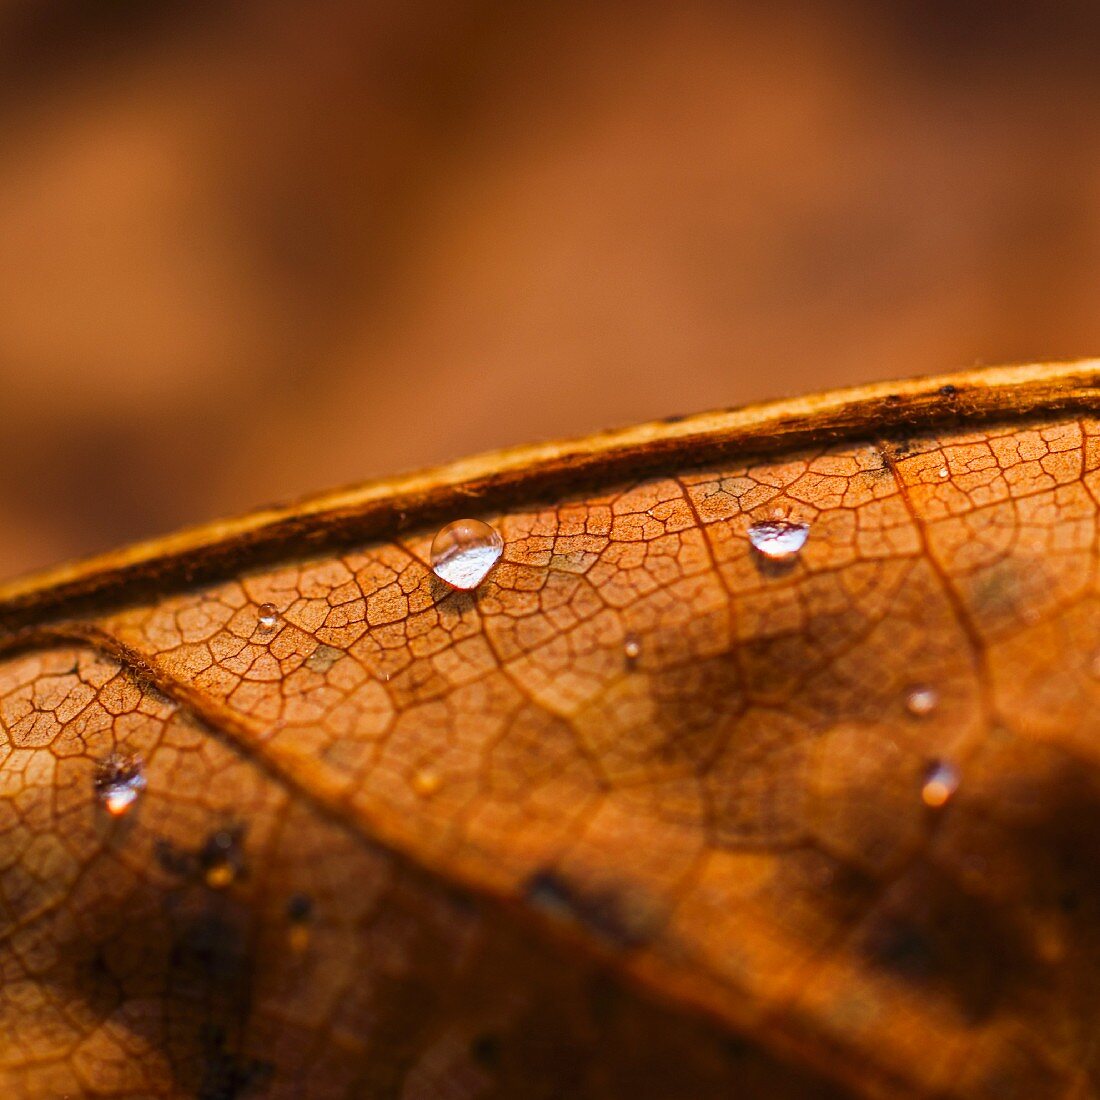 Tautropfen auf einem braunen Herbstblatt (Close Up)